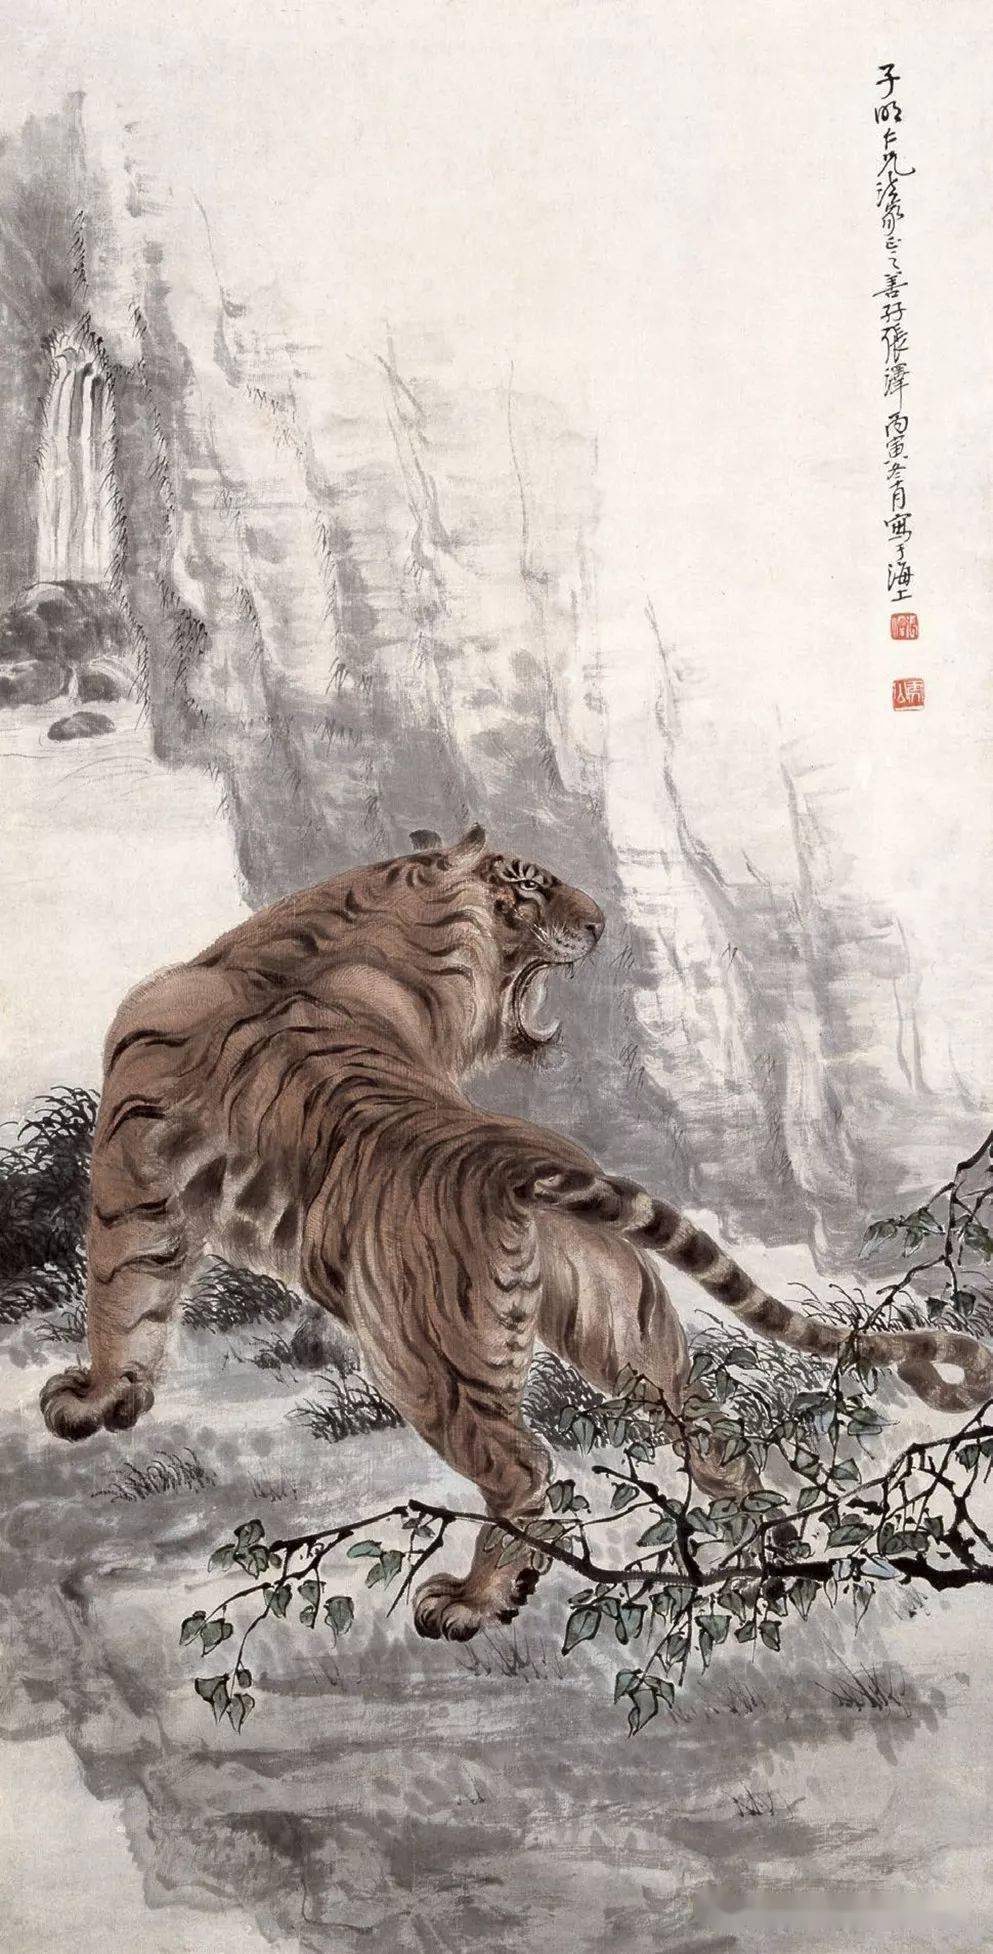 中国画虎第一人 名人图片